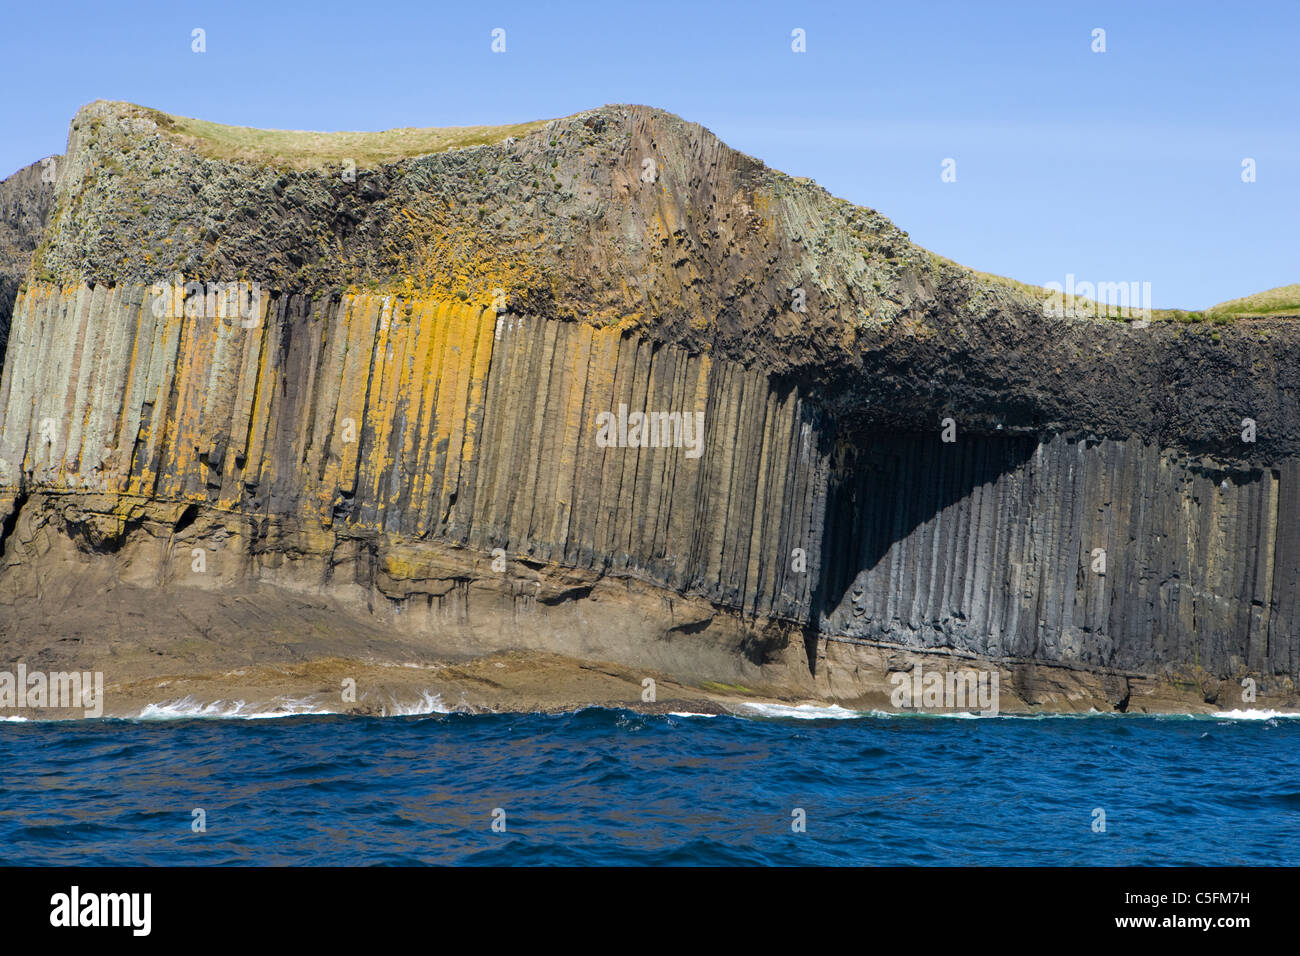 Les colonnes de basalte, Staffa, Argyll, Scotland, UK. Banque D'Images